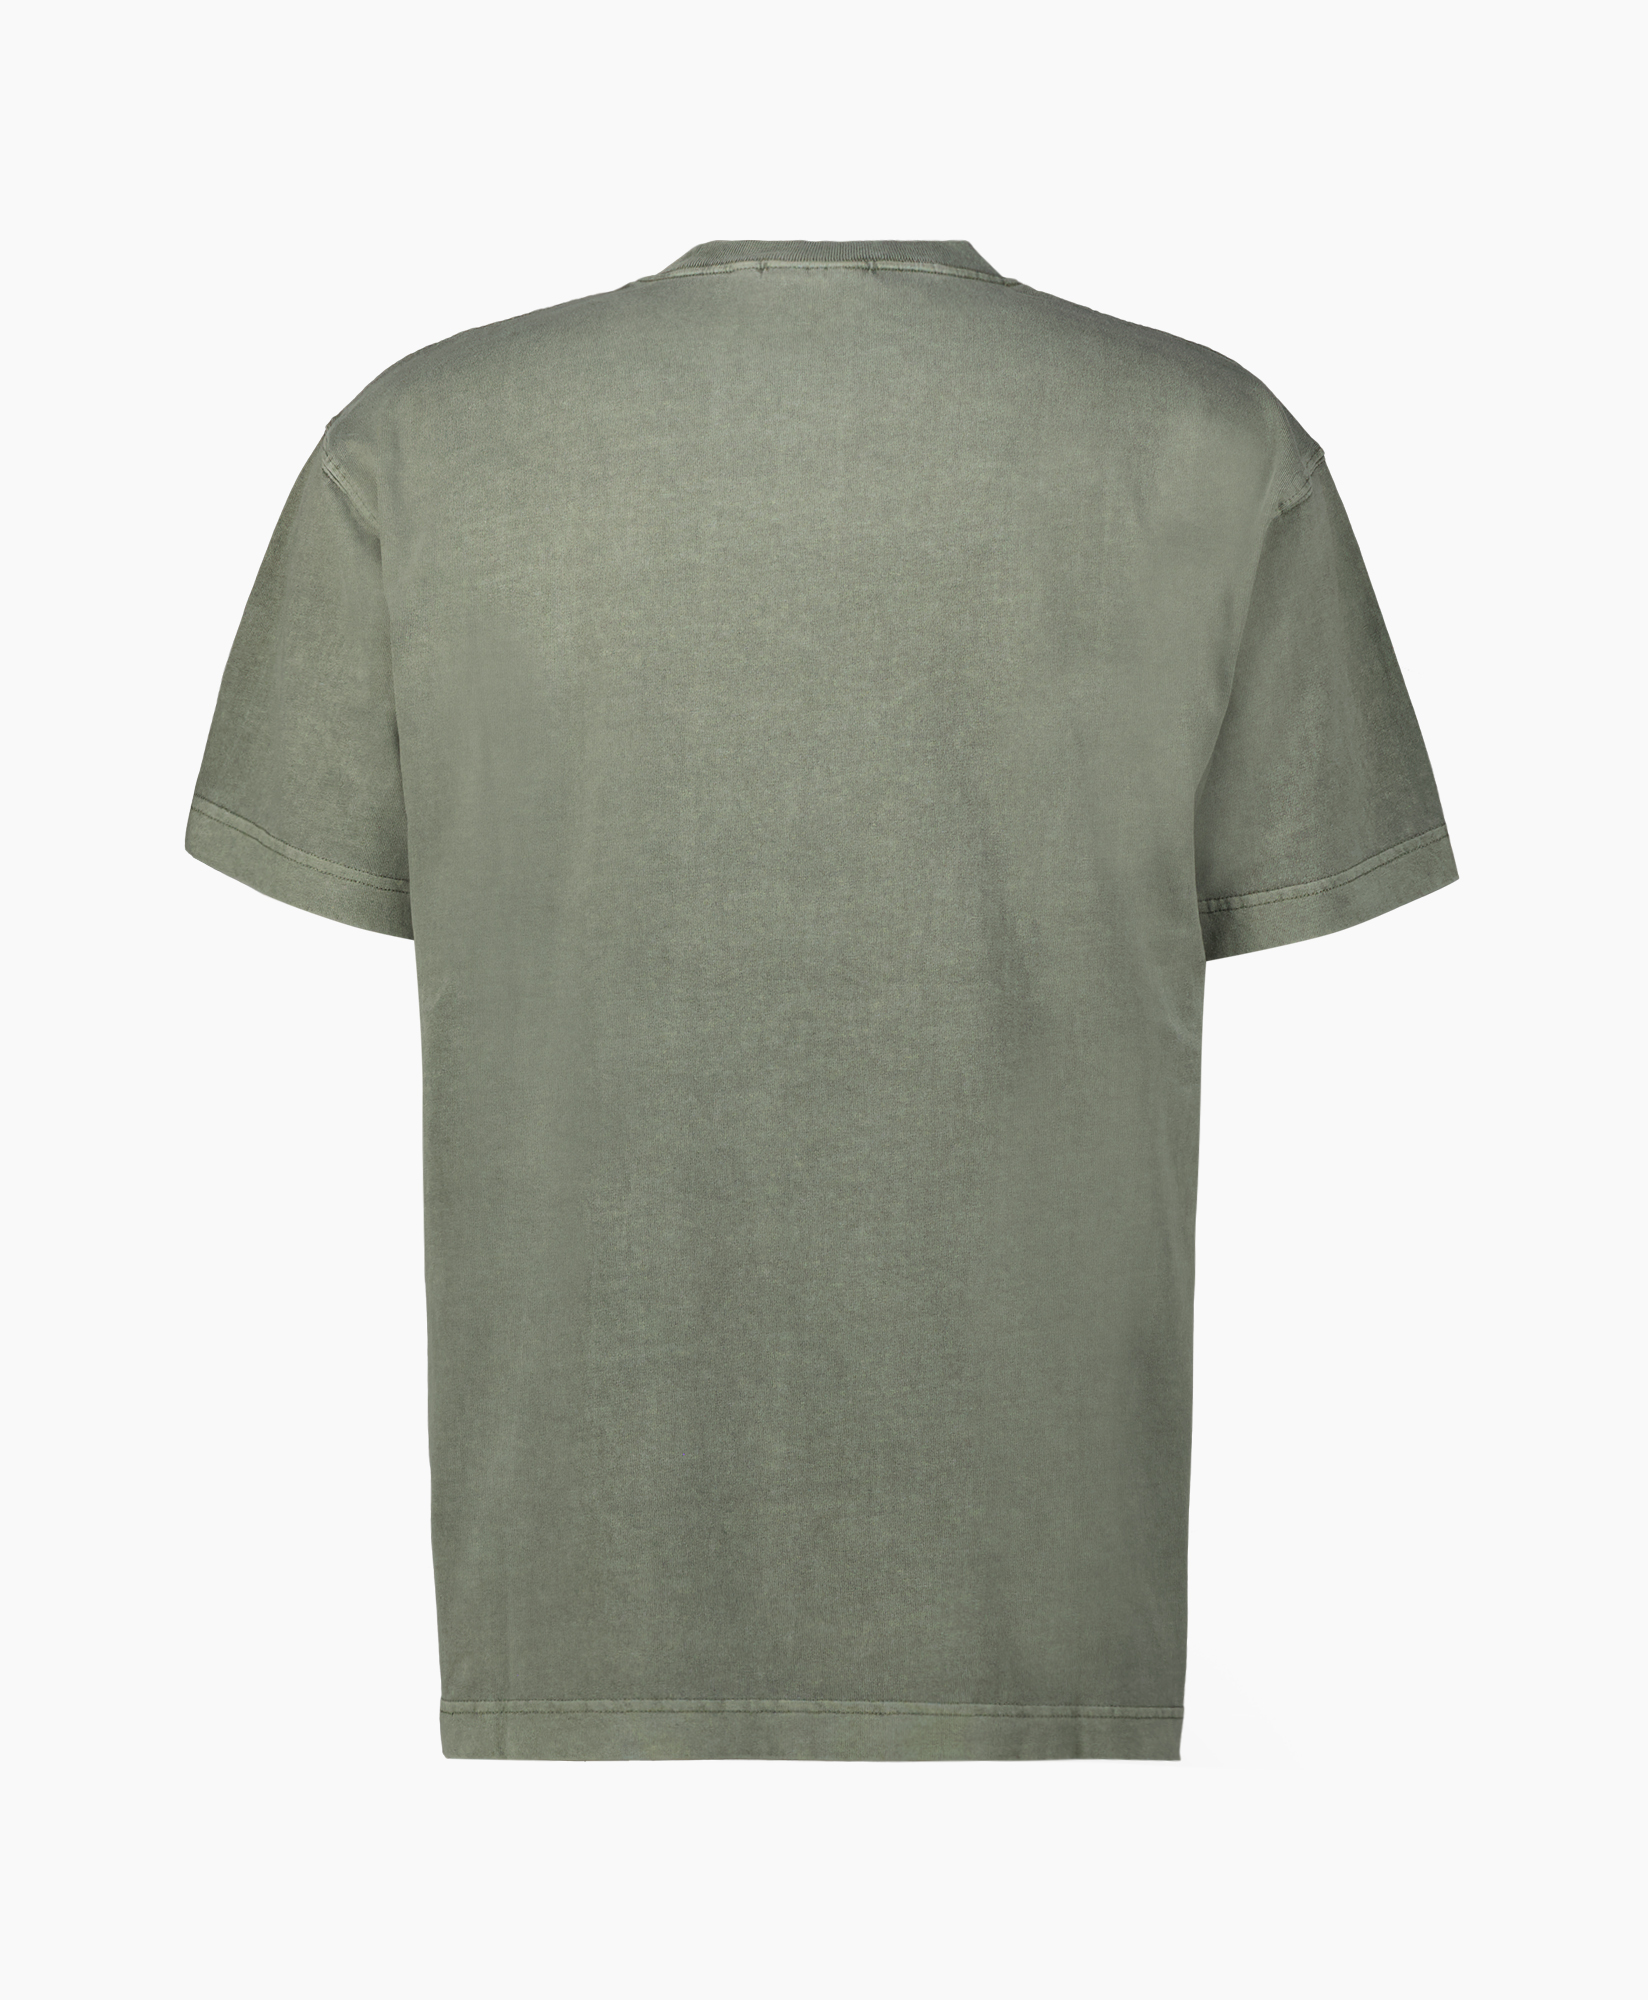 Carhartt Wip T-shirt T-shirt S/s Vista Groen